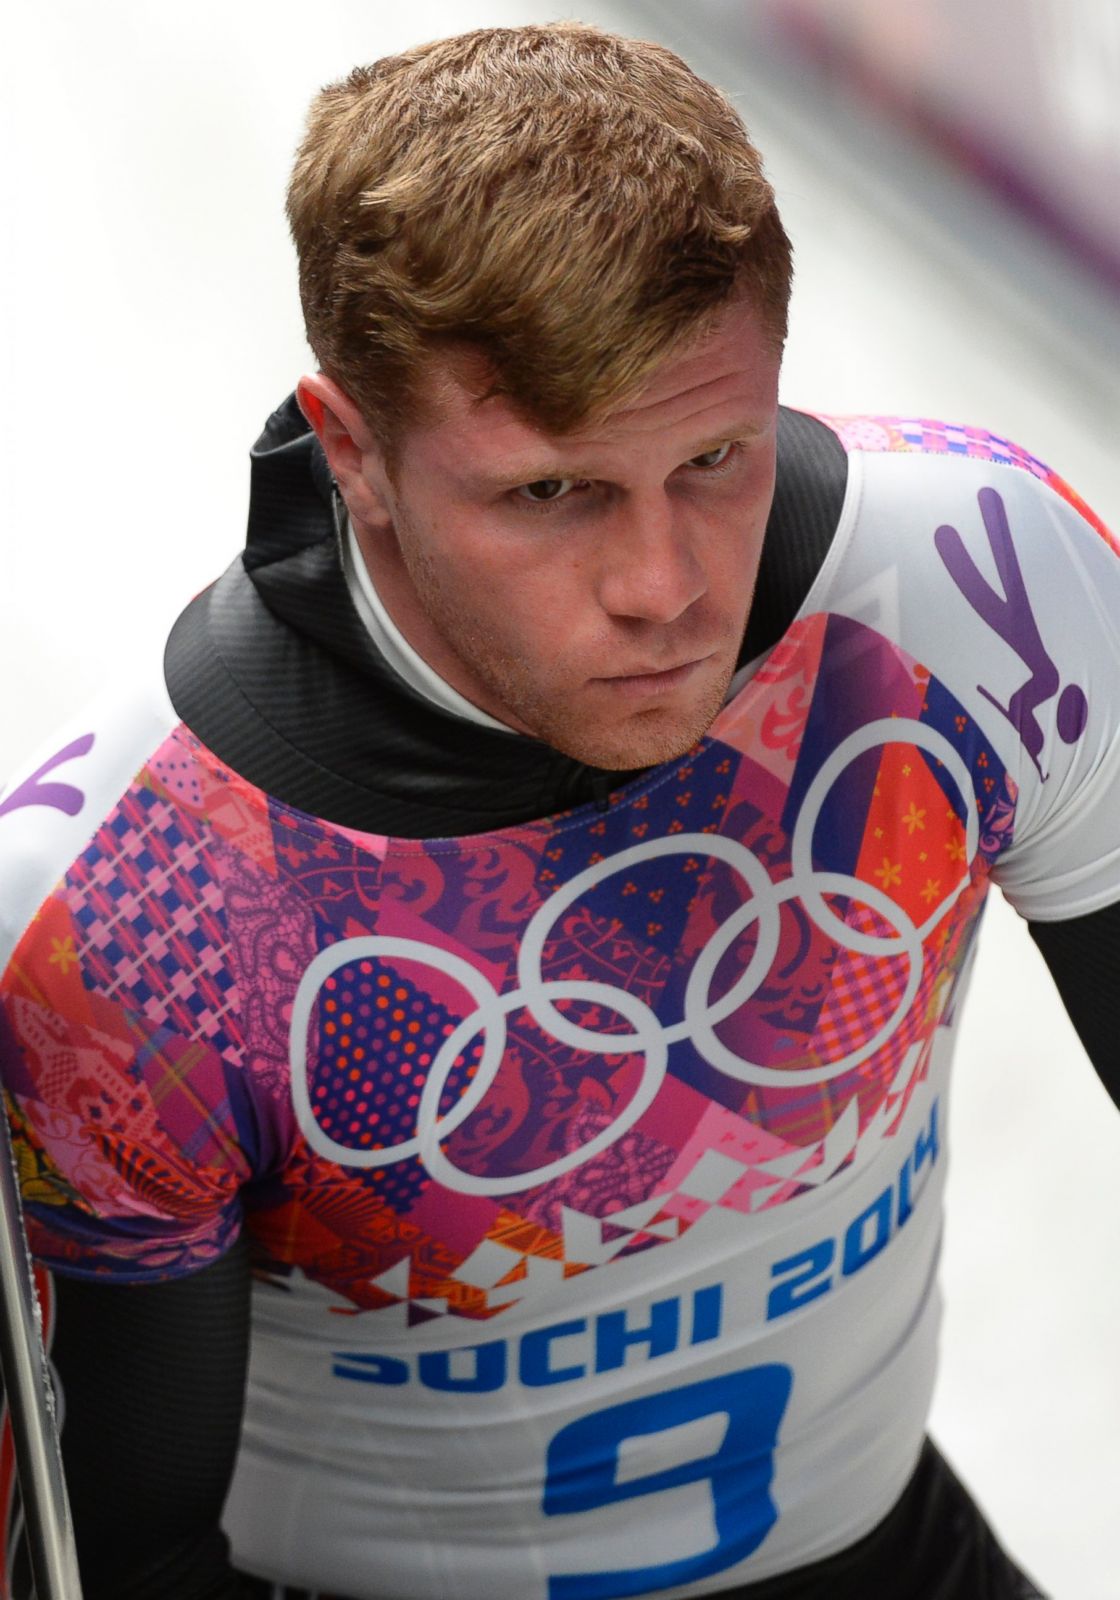 Fantastic Olympic Hair Photos | Image #6 - ABC News